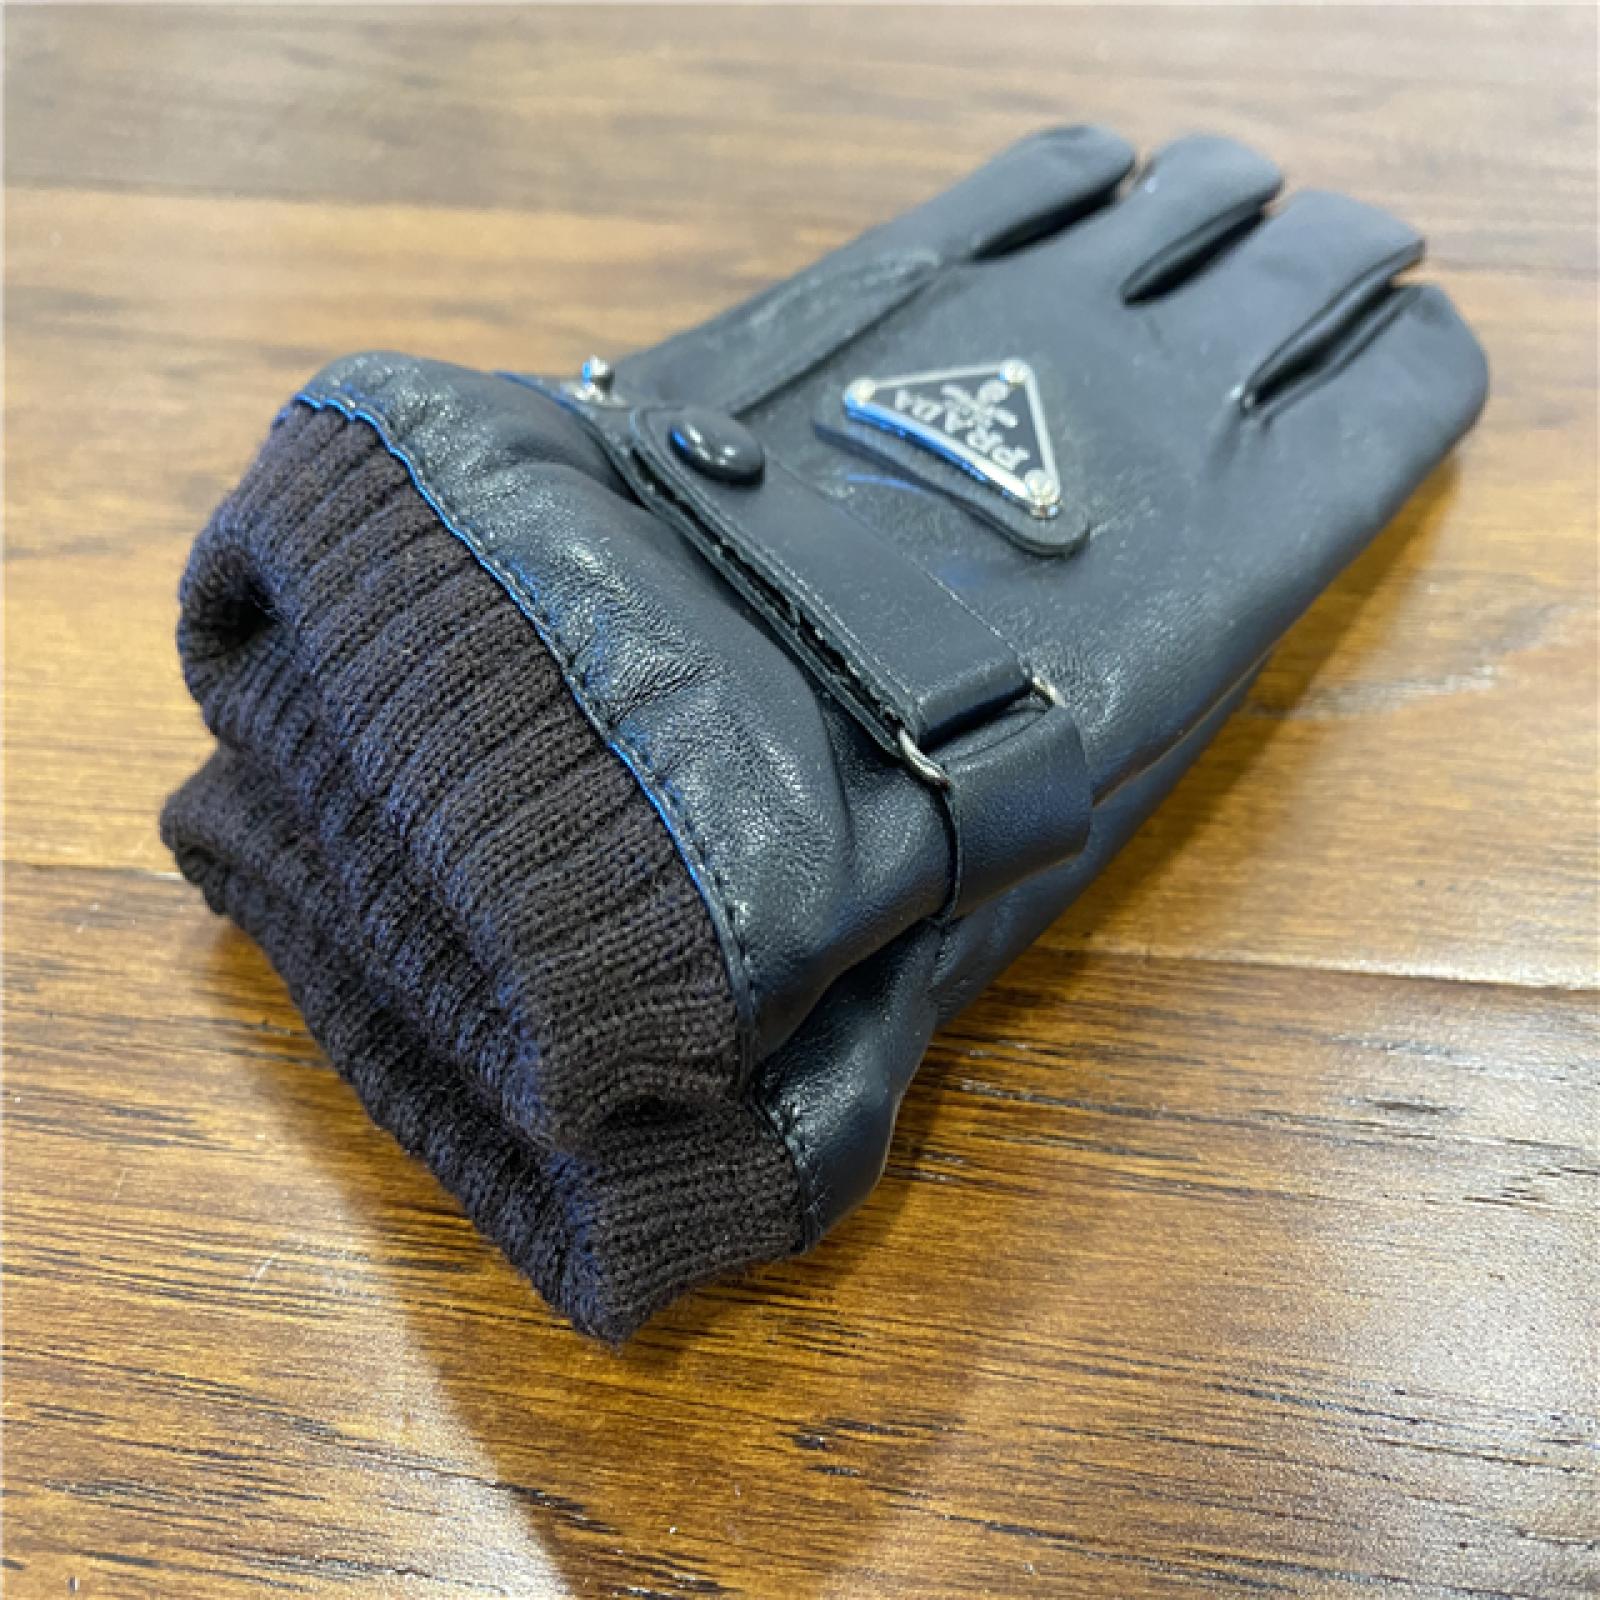 NEW! Prada Men's Suede Sheepskin Gloves - Black - Size 8.5